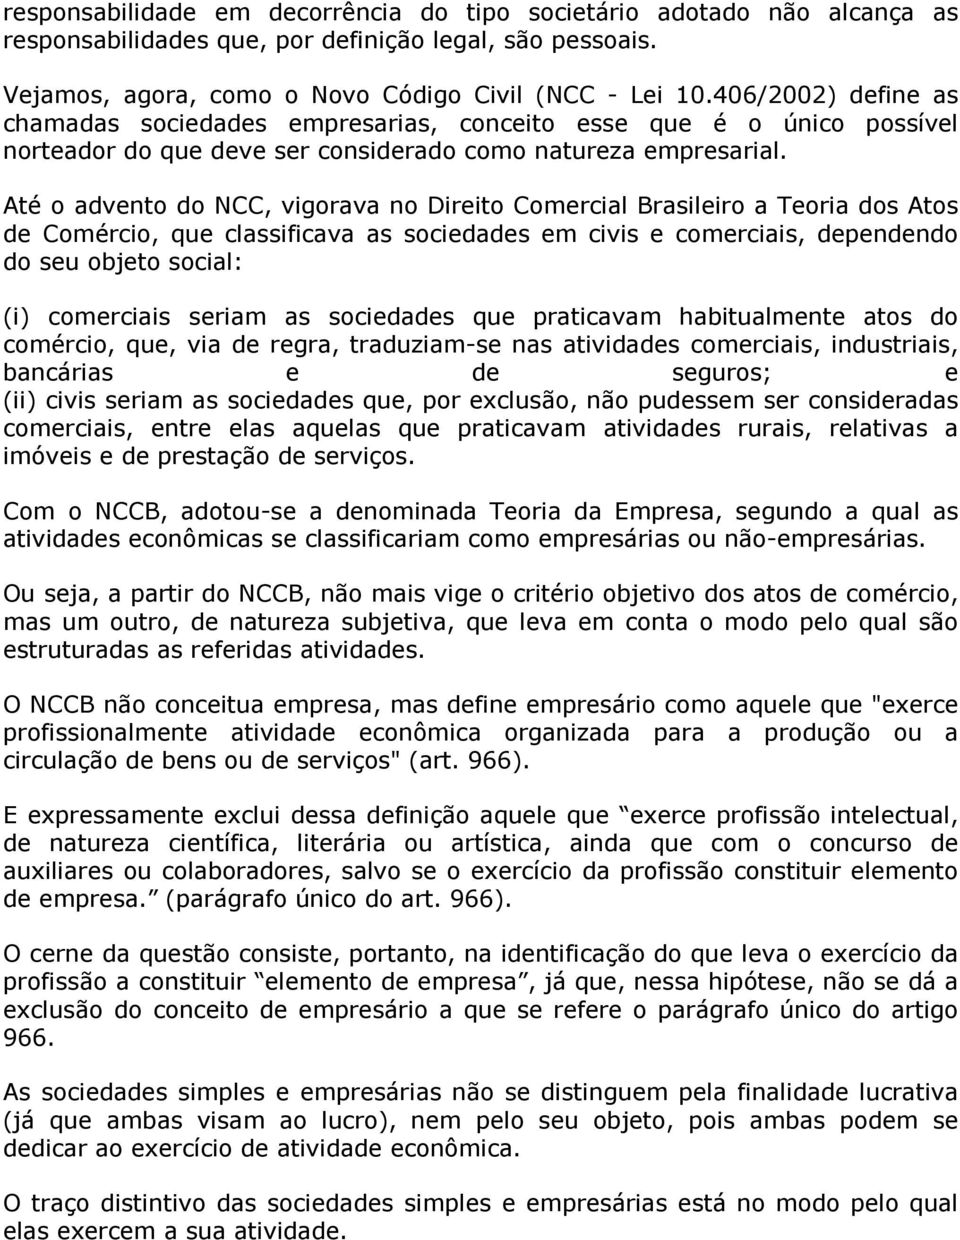 Até o advento do NCC, vigorava no Direito Comercial Brasileiro a Teoria dos Atos de Comércio, que classificava as sociedades em civis e comerciais, dependendo do seu objeto social: (i) comerciais